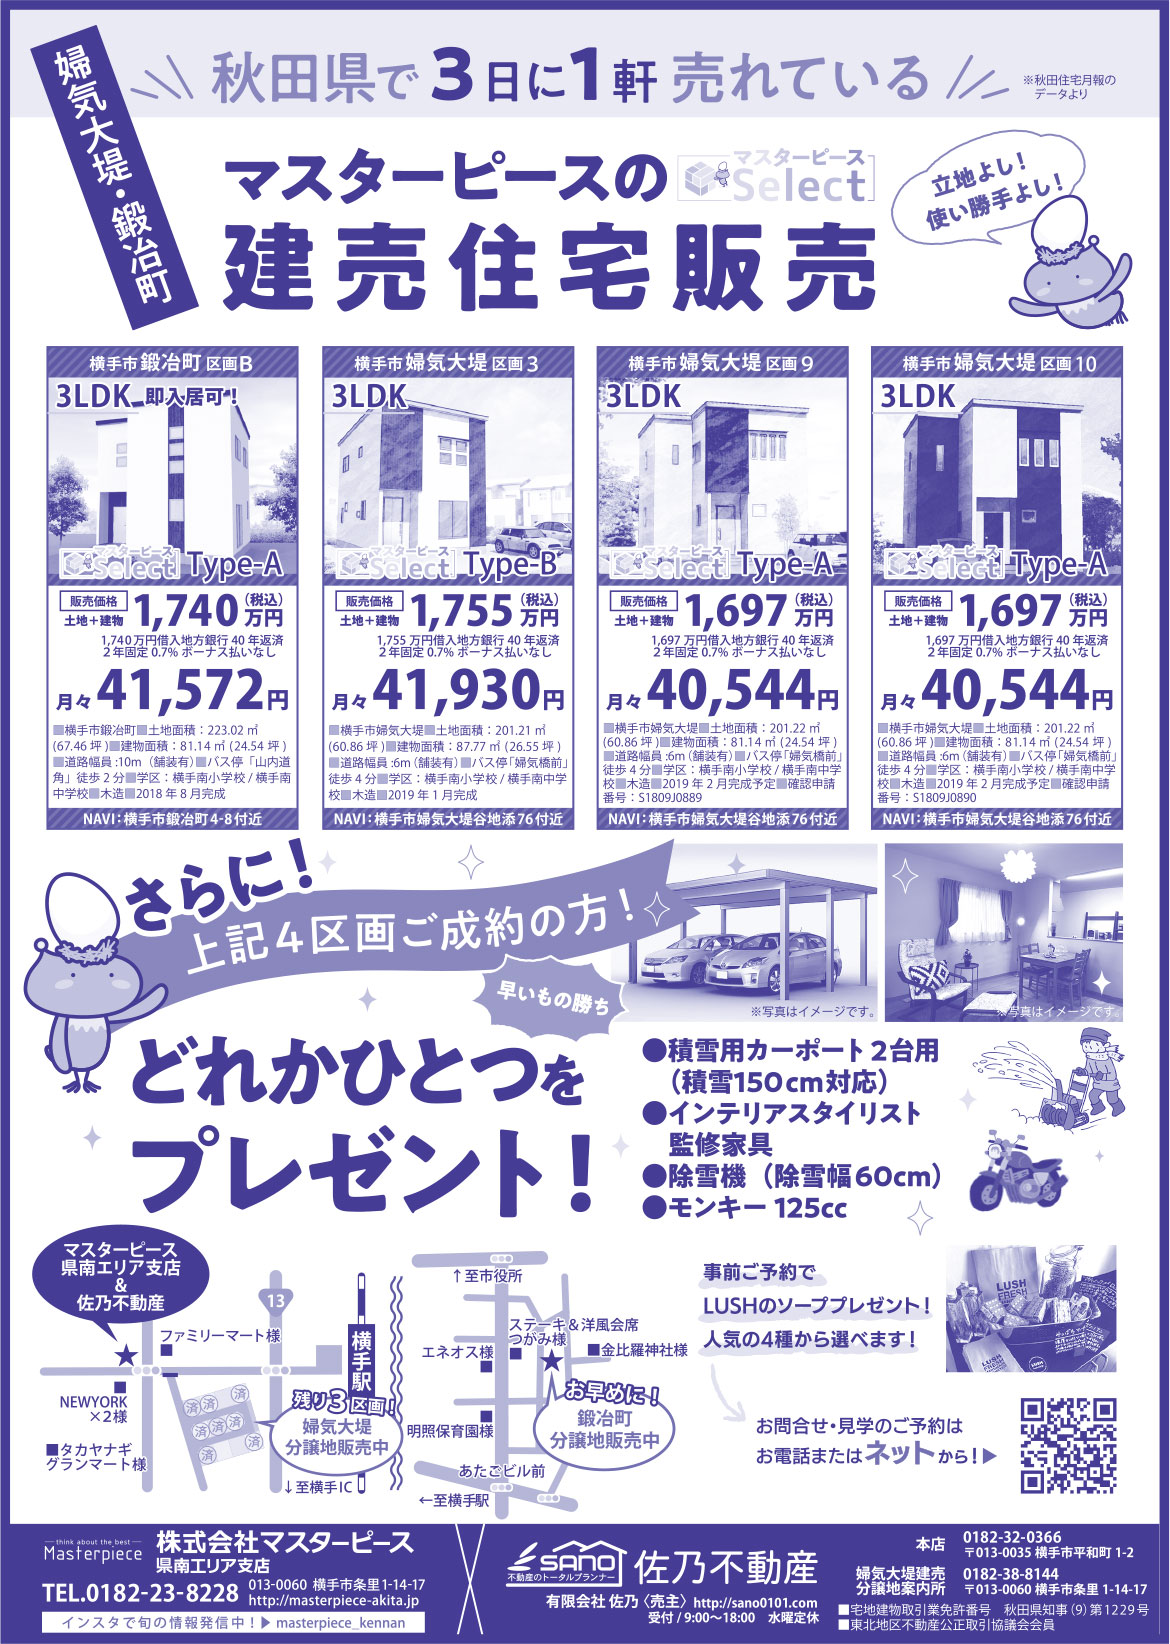 株式会社マスターピース様の2019.07.19号広告